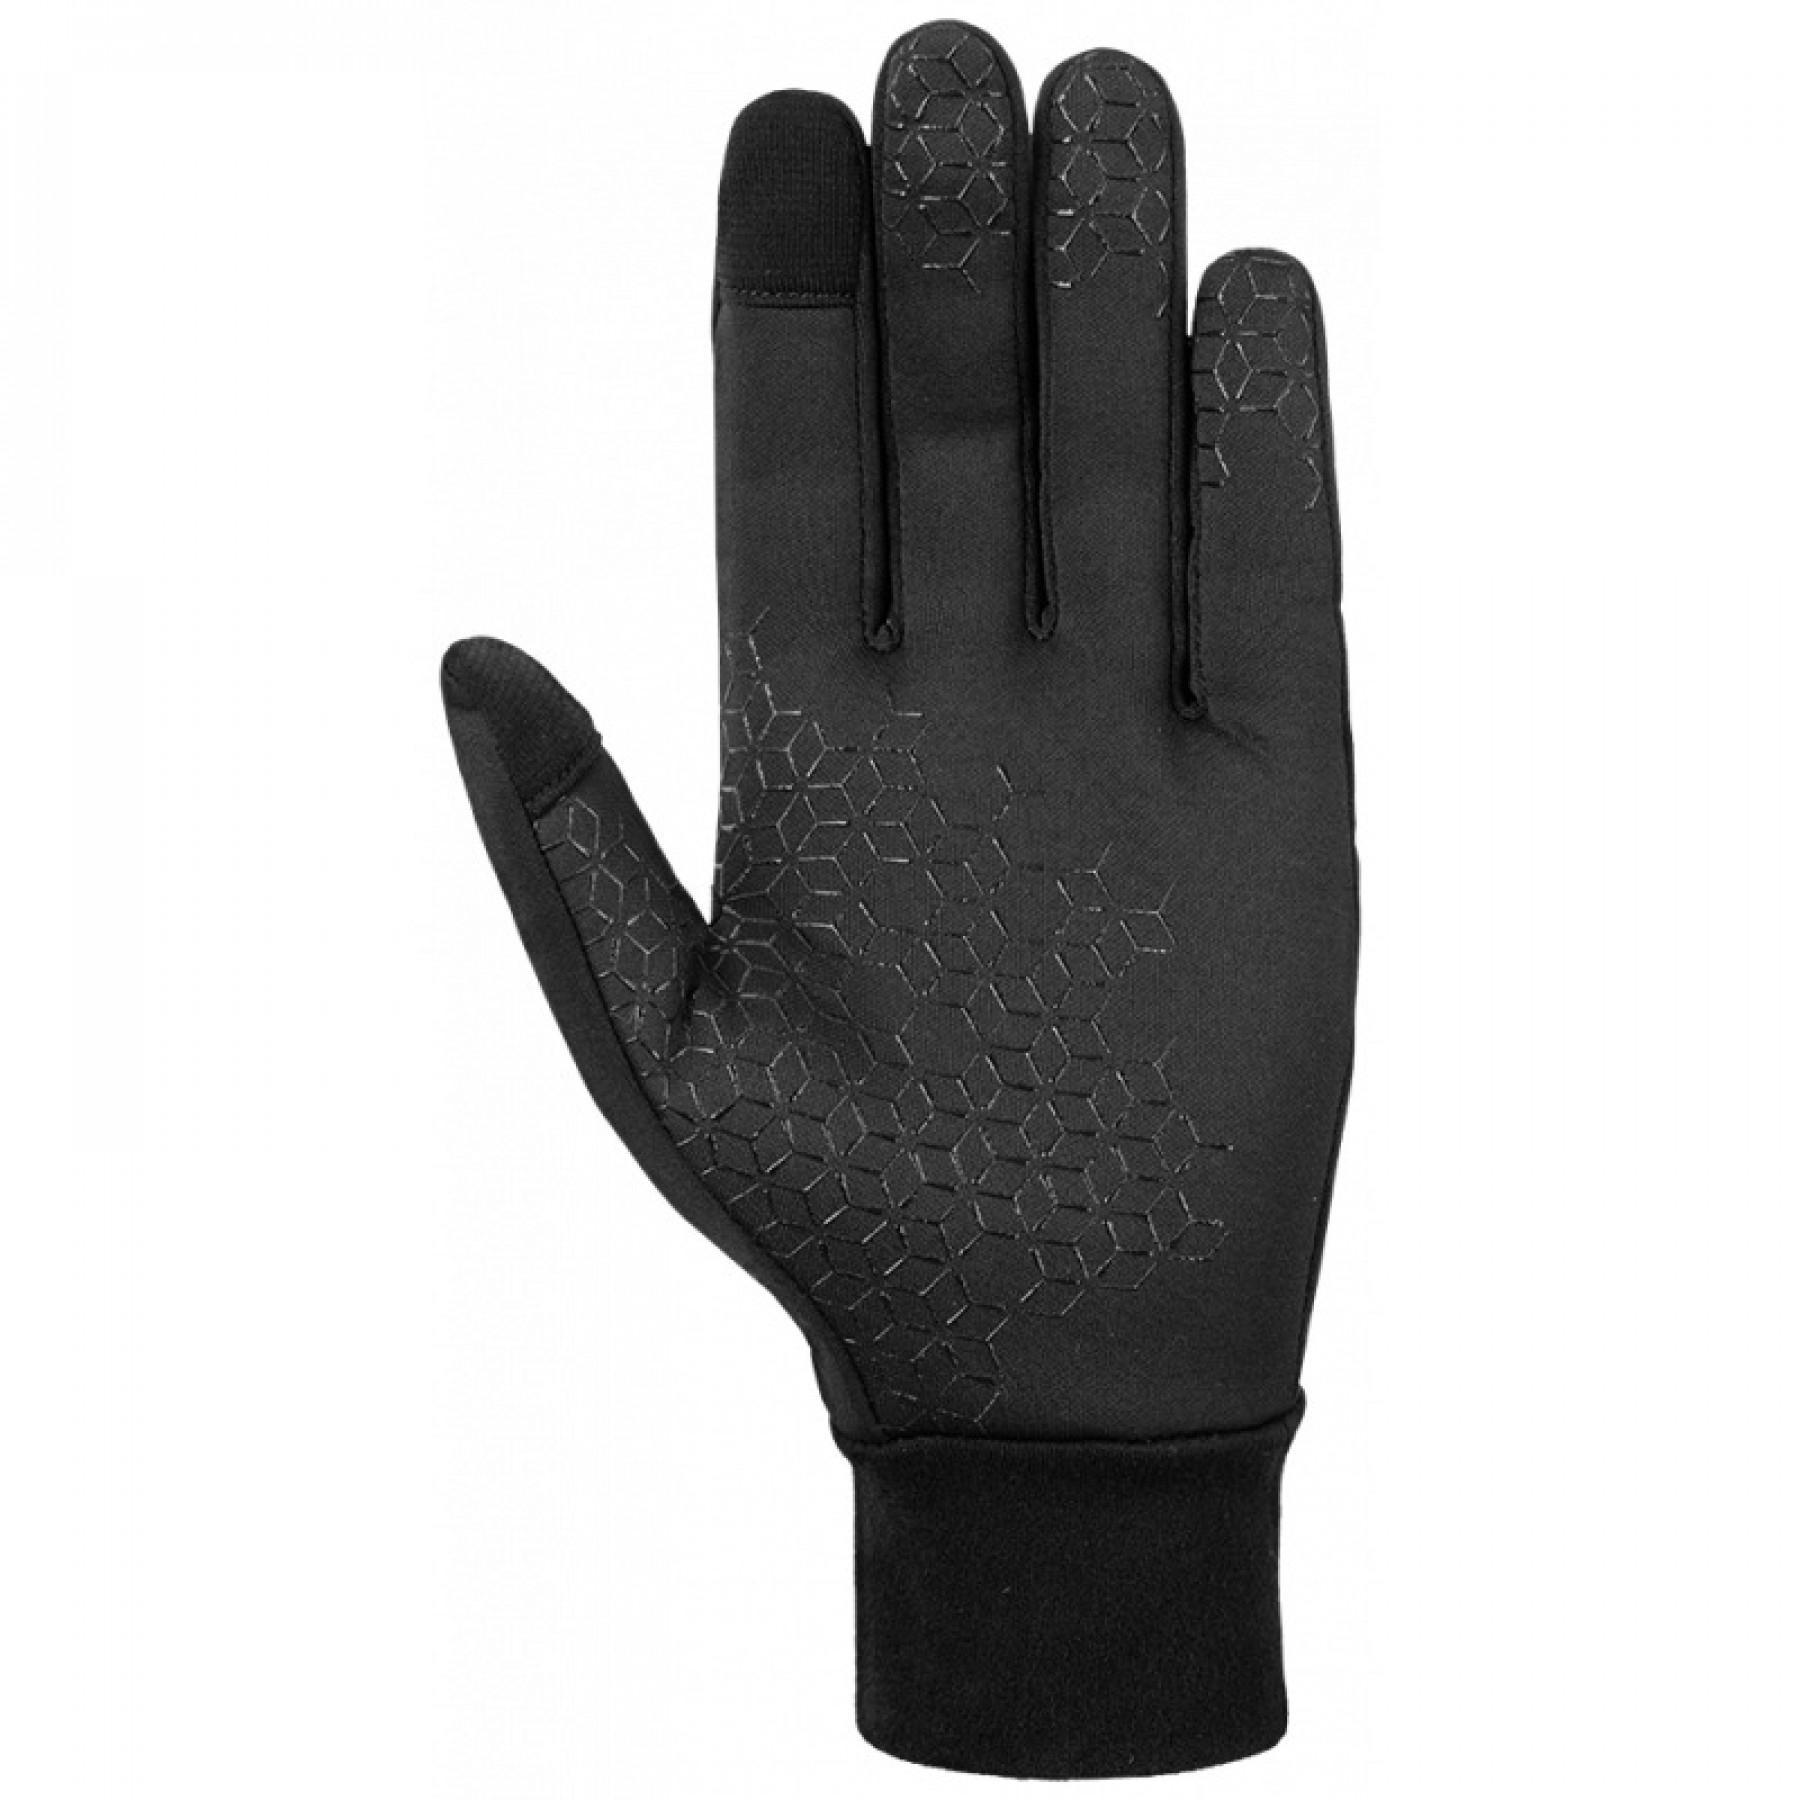 Gloves Reusch Ashton Touch